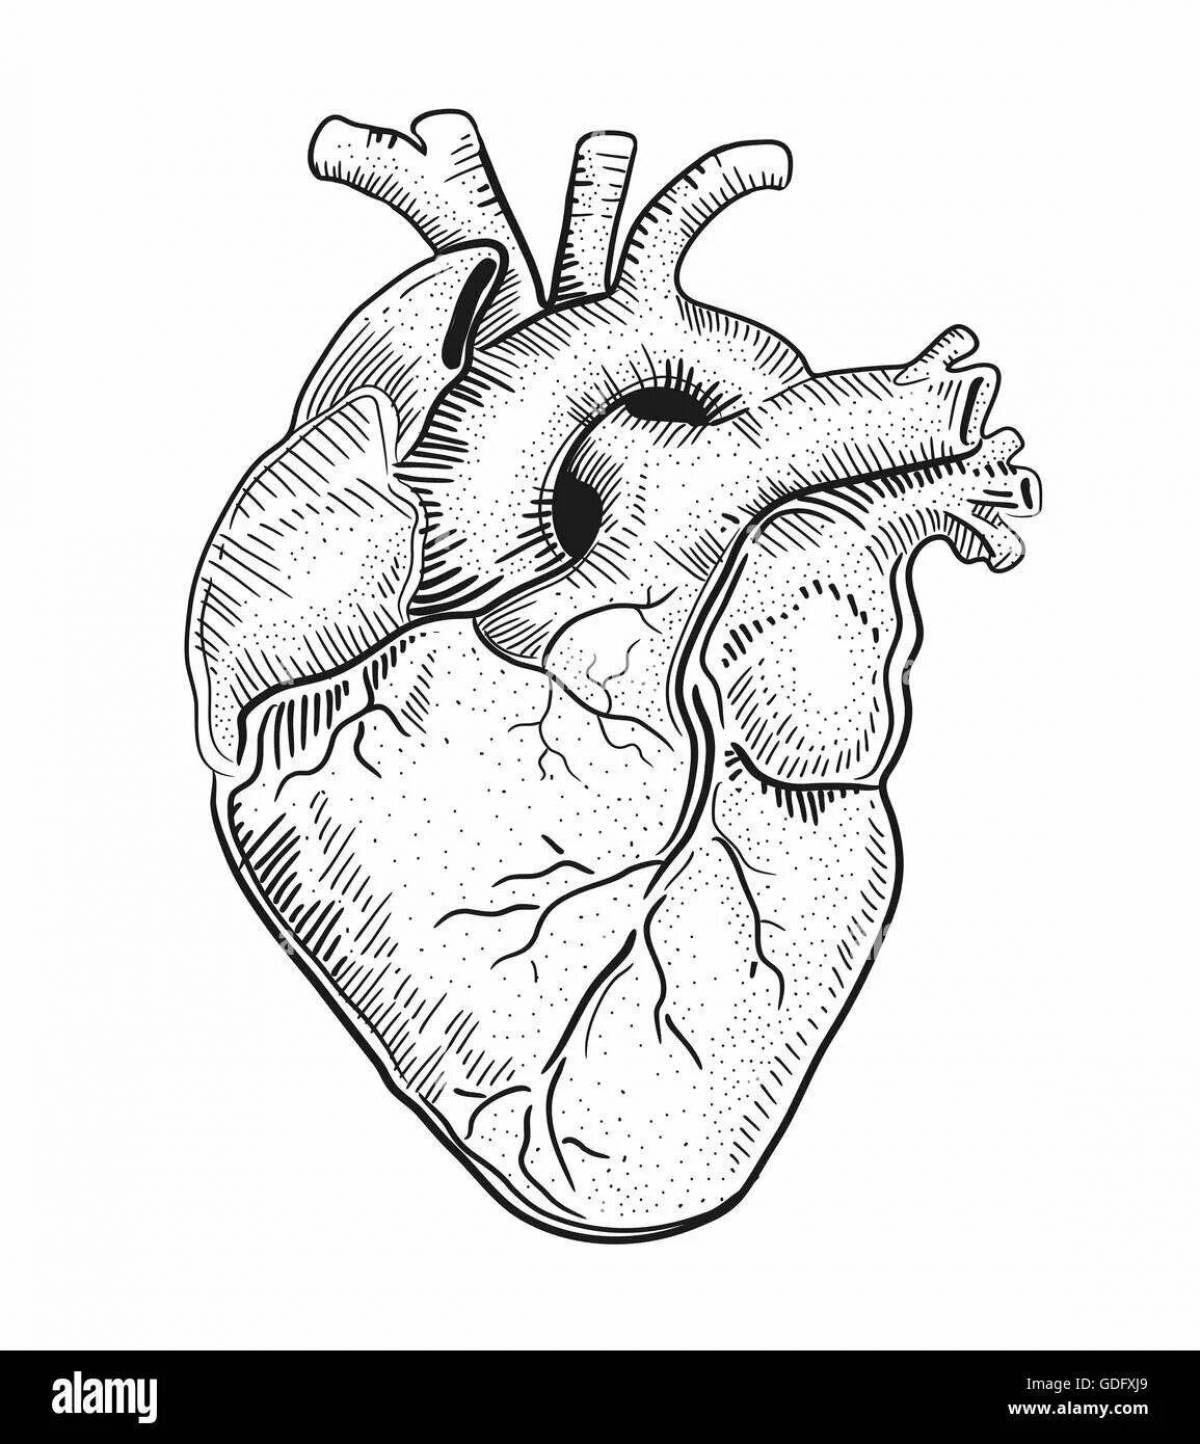 Раскраска сияющее анатомическое сердце